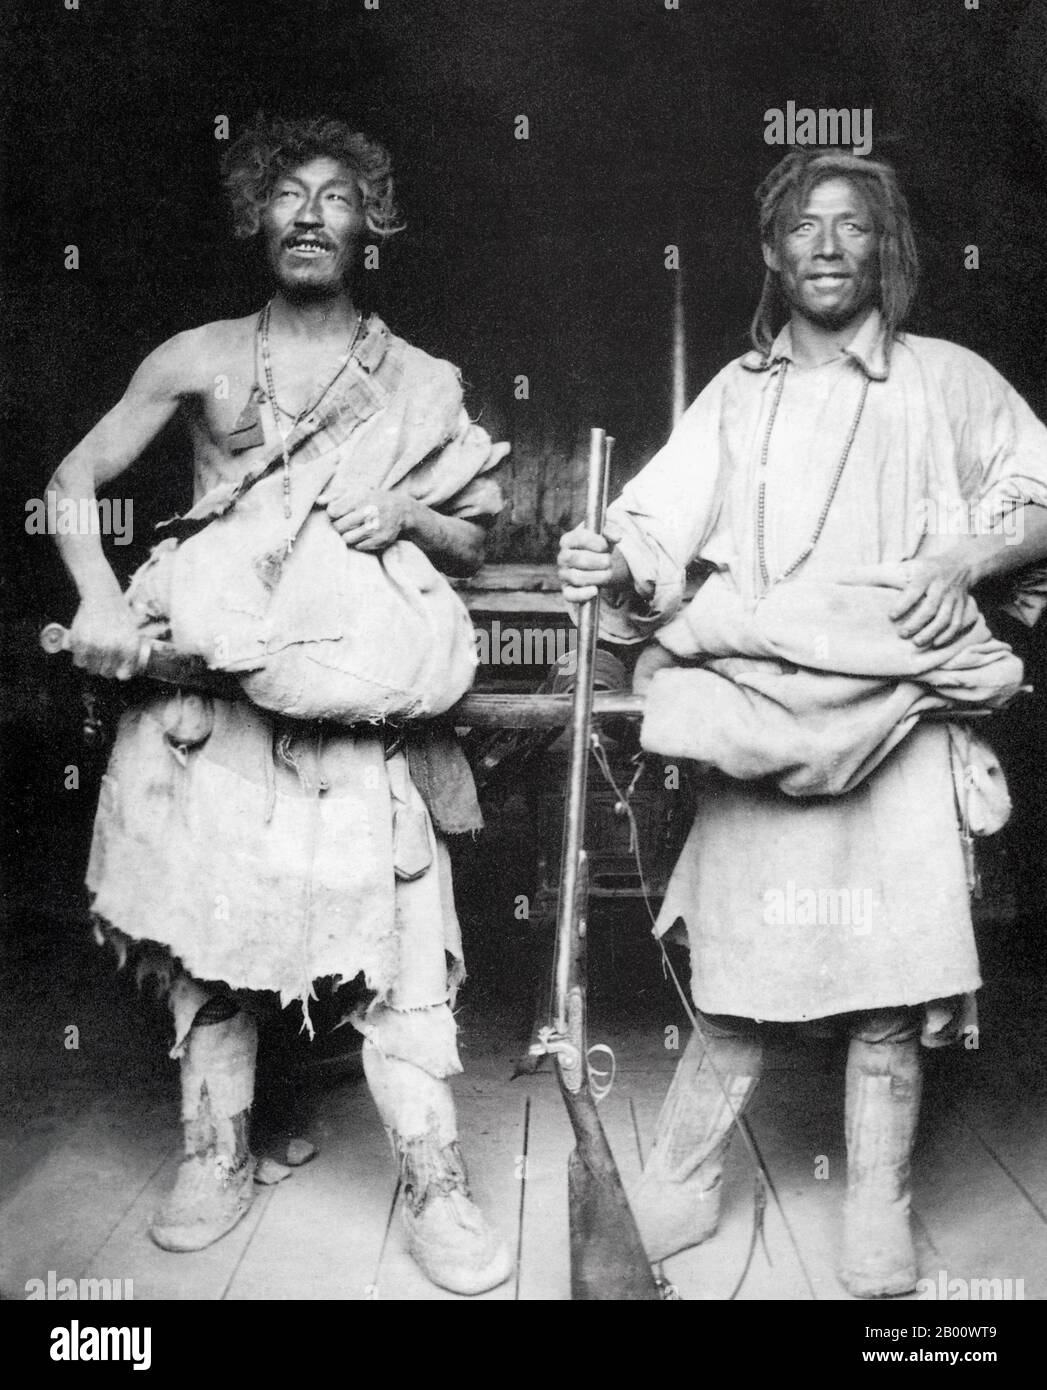 Tibet : une photographie de 1910 de deux hommes khampas de souche de Yerkalo vêtus de peaux de chèvre. Kham est une région de l'est du Tibet qui a été considérée comme un "district administratif spécial" en Chine jusqu'en 1939, quand elle est devenue une province chinoise officielle. Les habitants de Kham sont appelés ‘Khampas’ et sont des guerriers très réputés. Banque D'Images